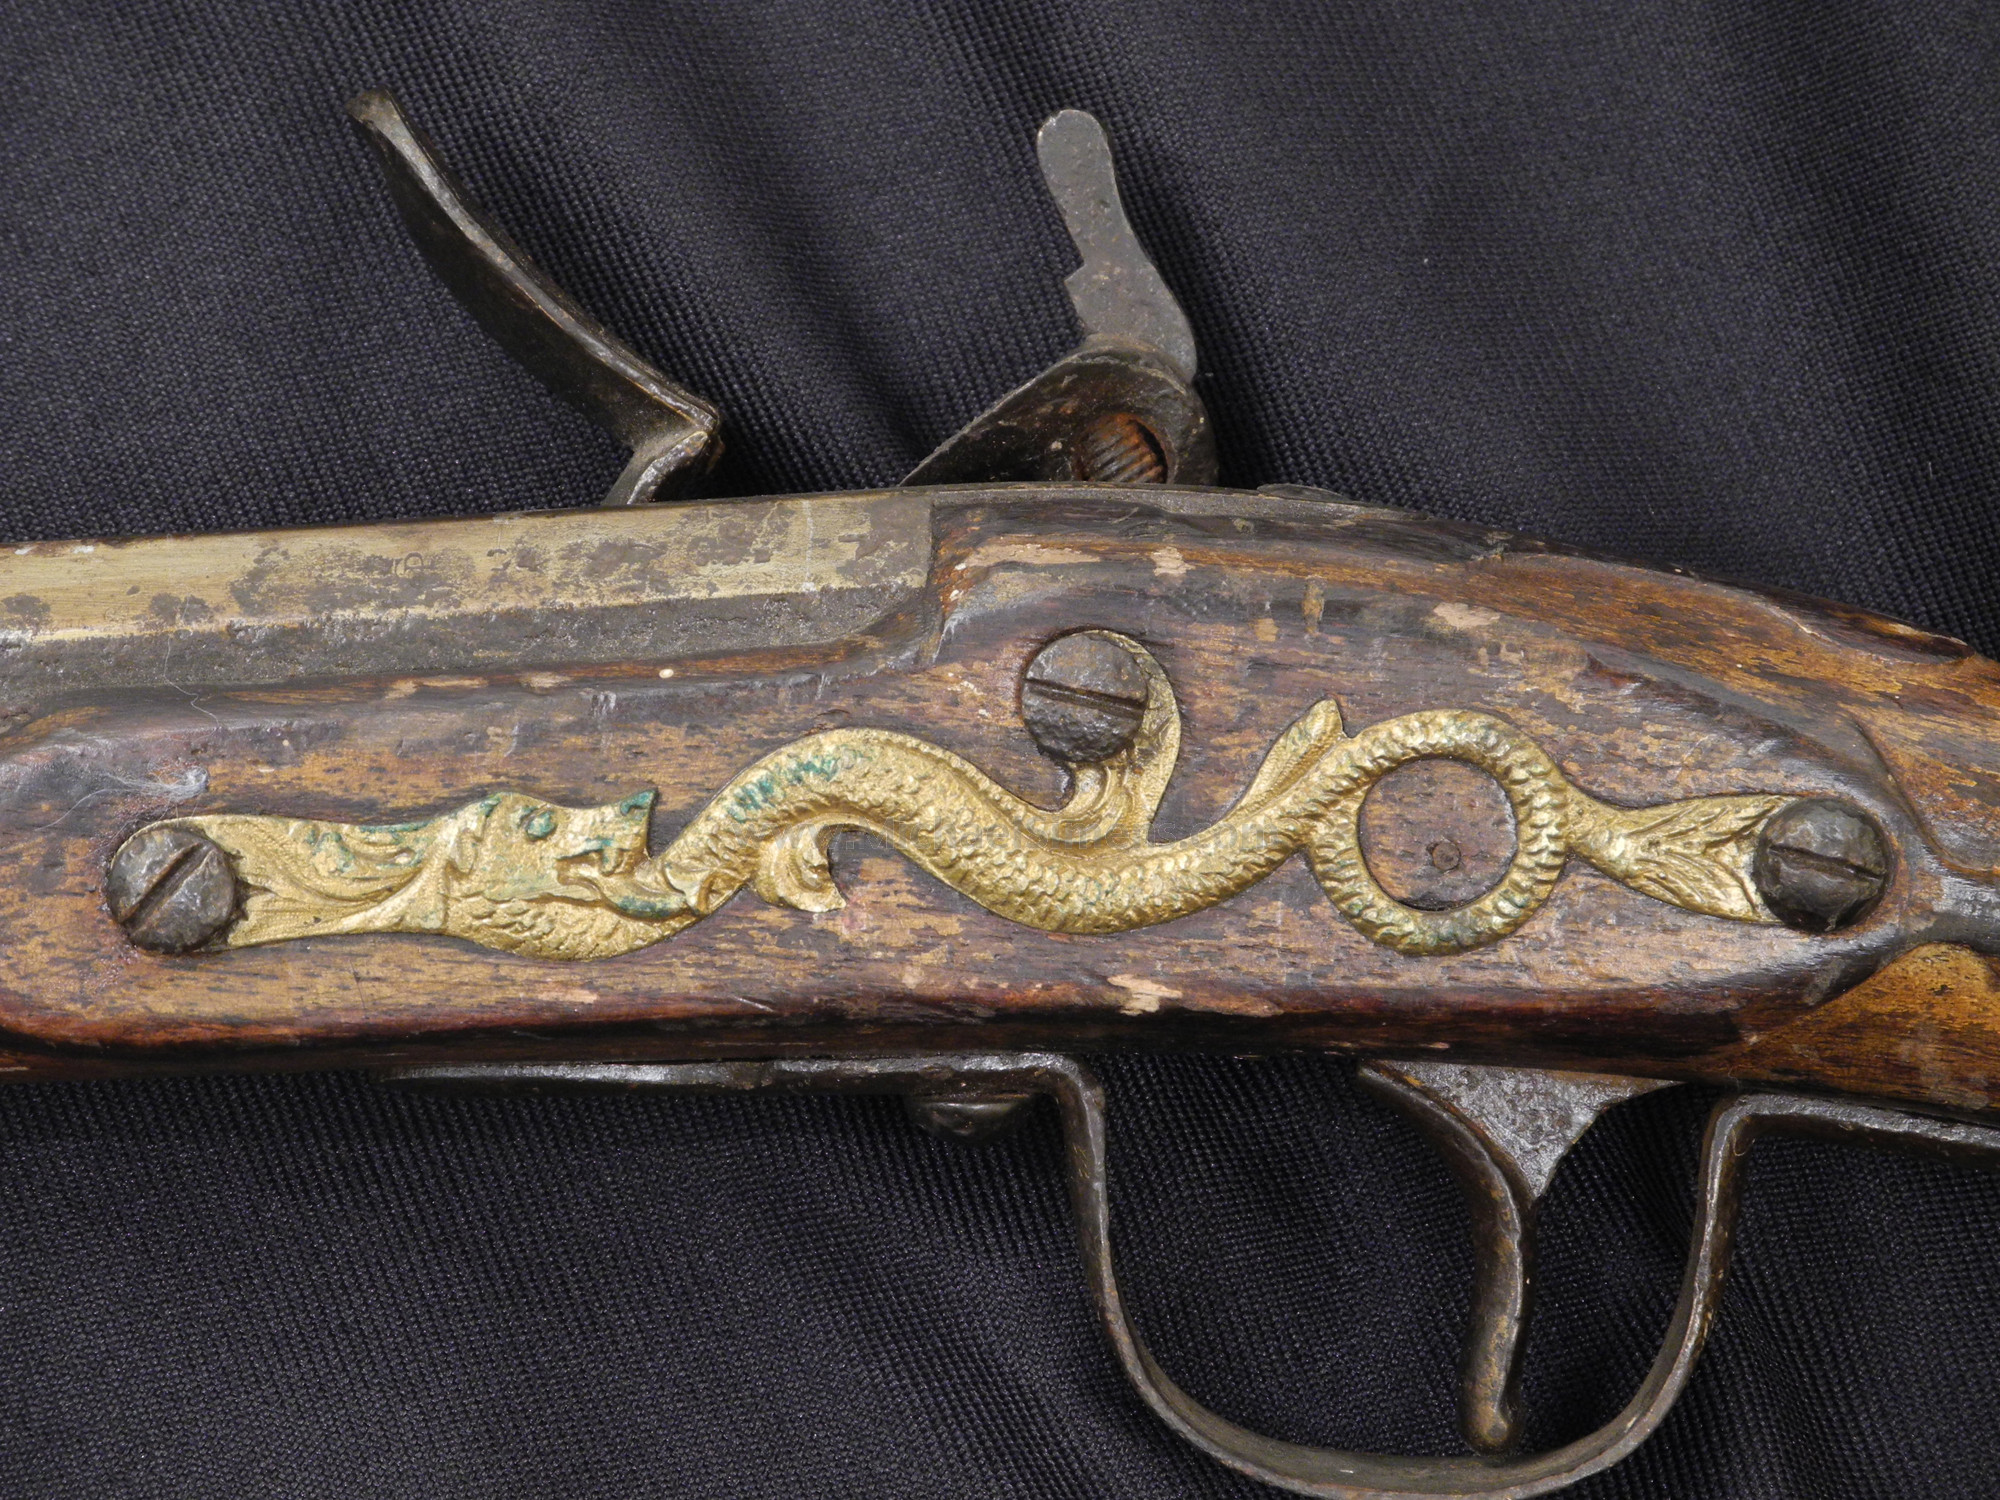 INDIAN TRADE GUN, HUDSON BAY - ANTIQUE RIFLES